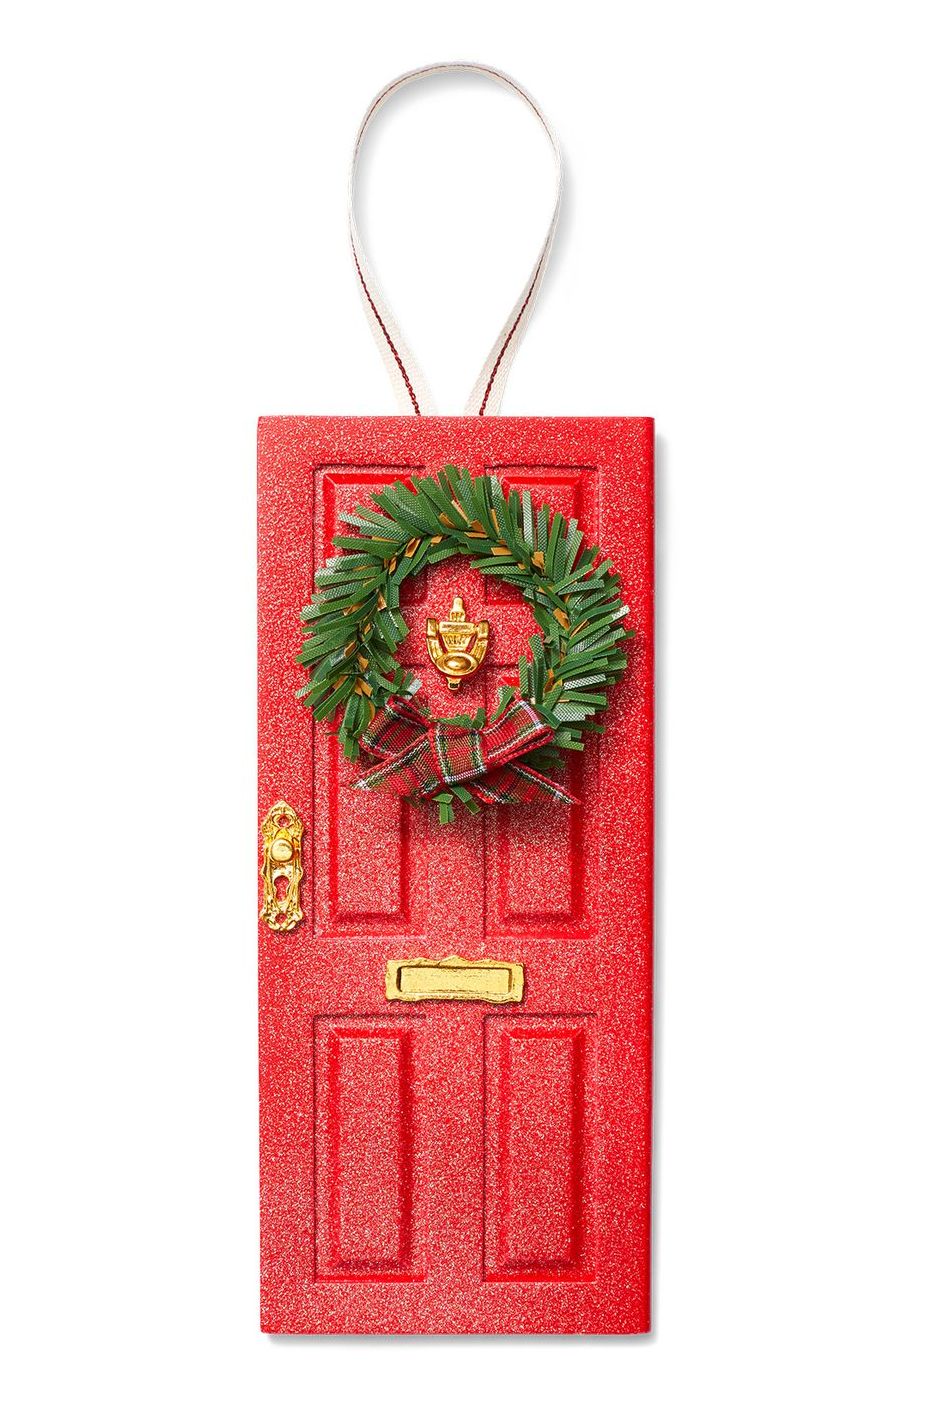 DIY elf door ornament.